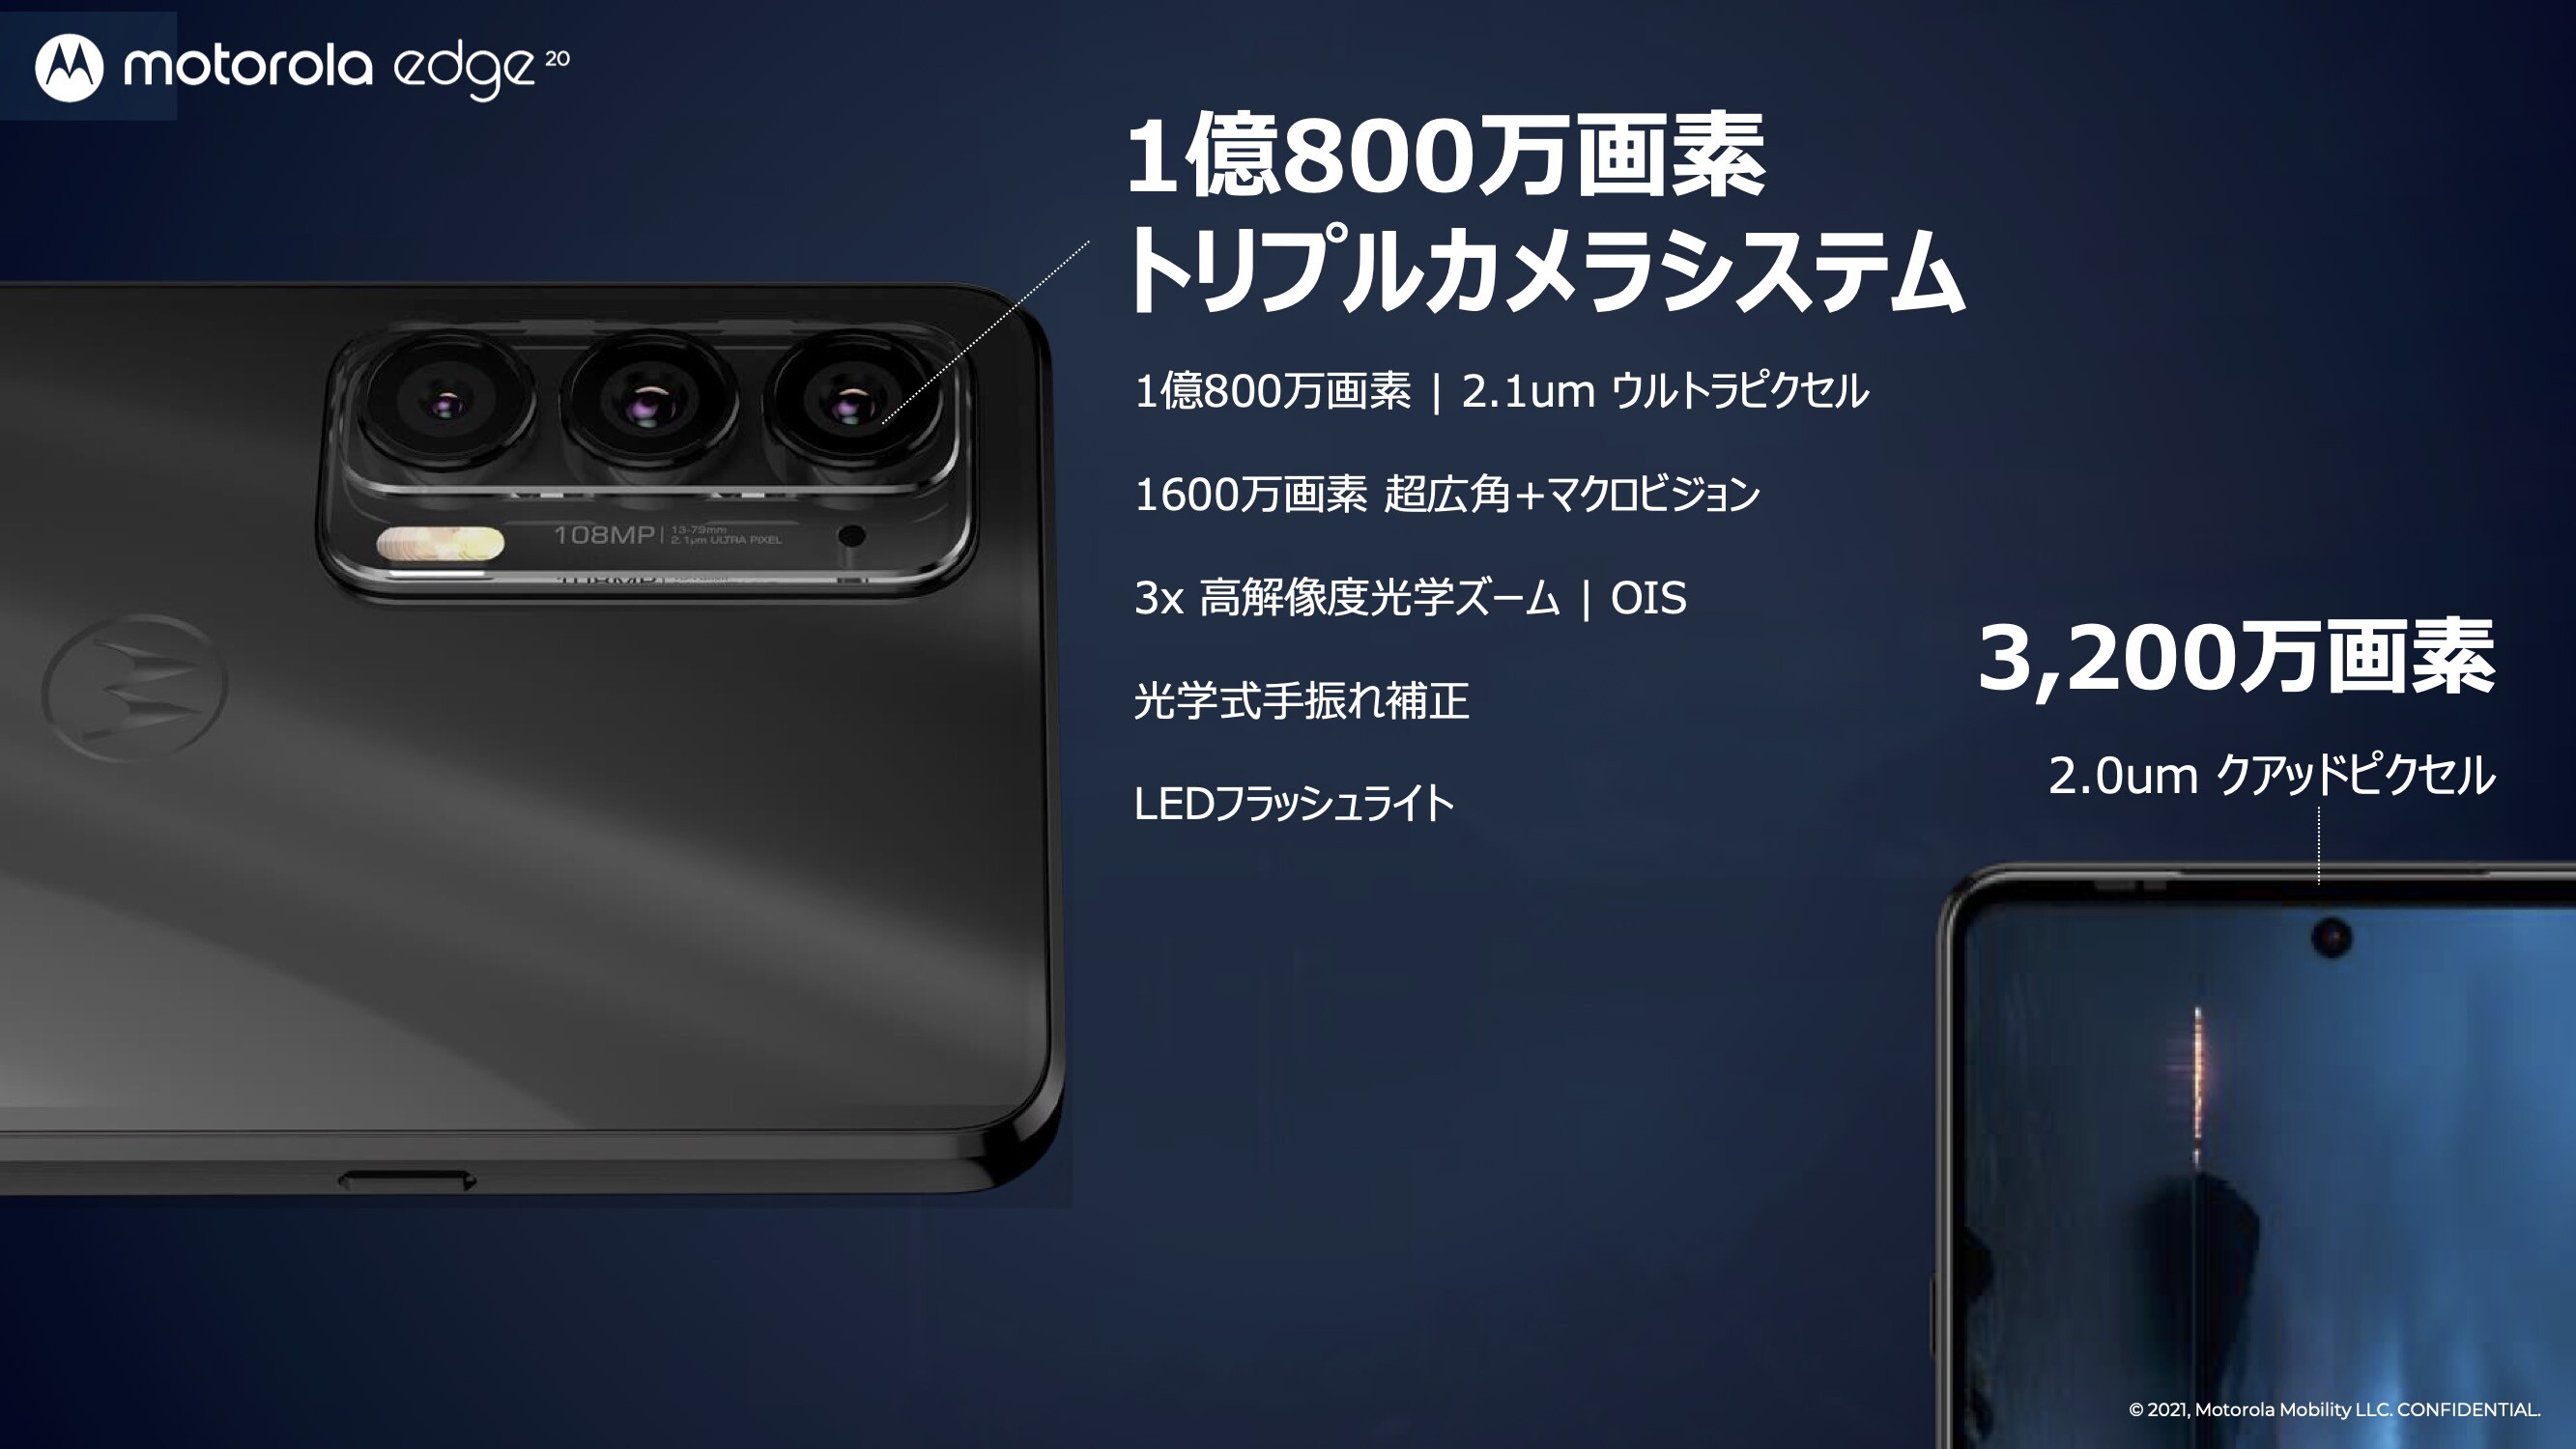 モトローラ、5G対応スマホ「motorola edge 20」と「motorola edge 20 fusion」を日本で10月22日に発売